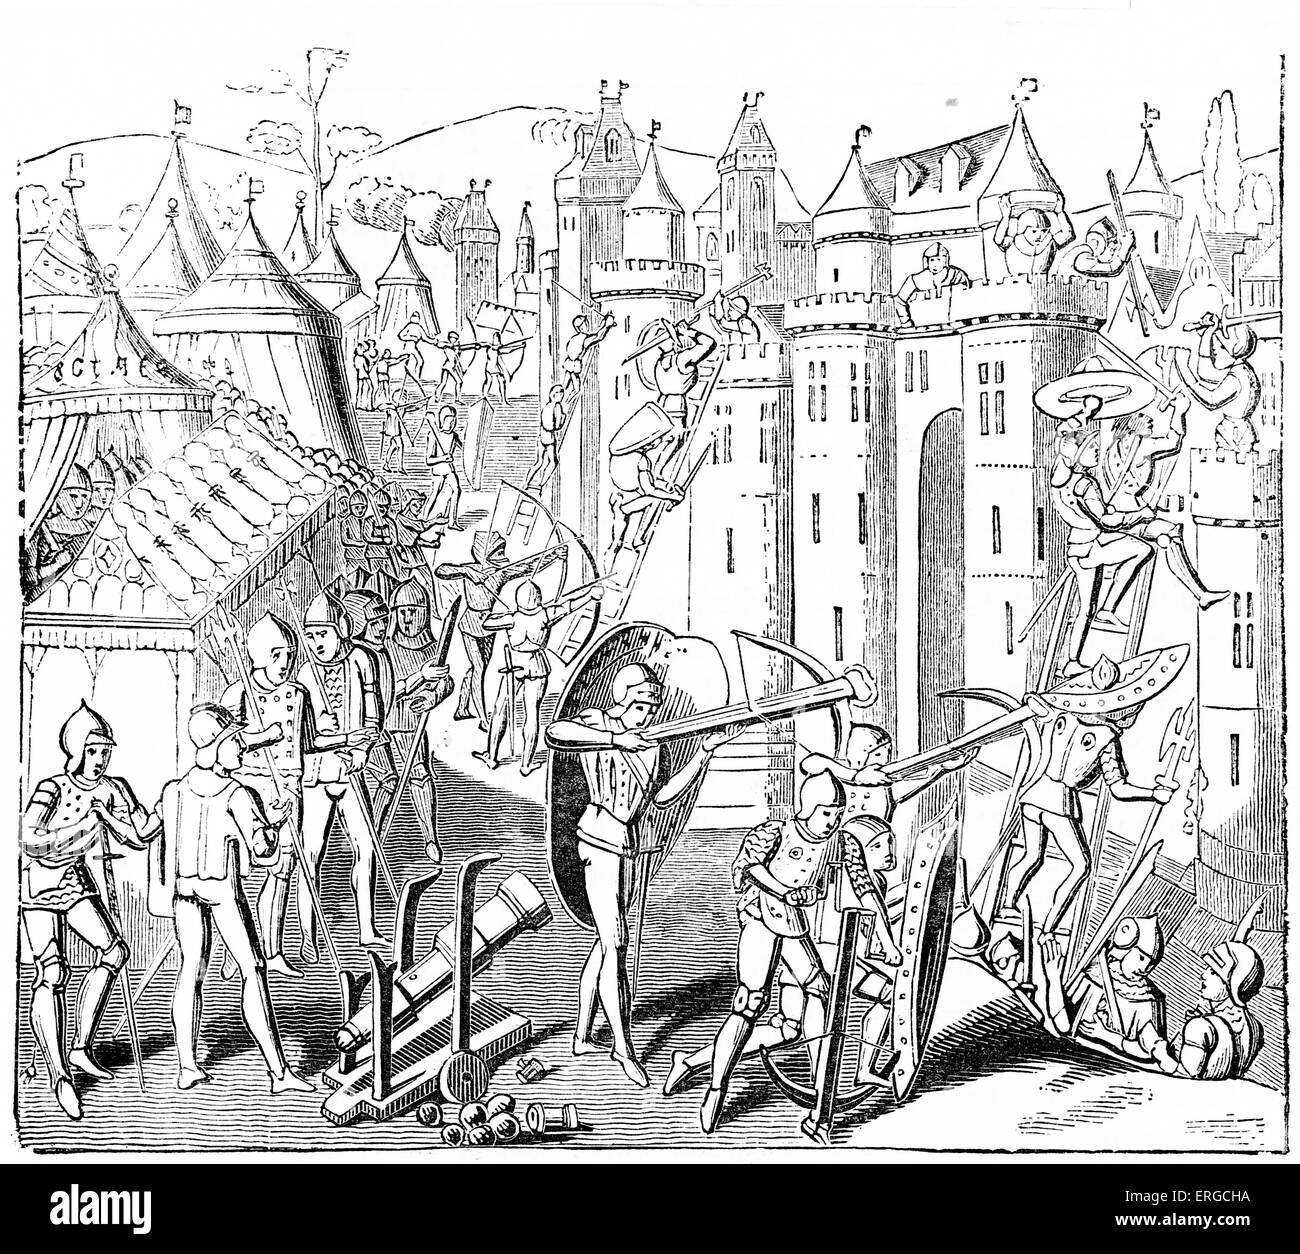 Asalto a Fort - 12th siglo. Con canon y arqueros ascendiendo una pared de castillo. Desde grabado basado en el manuscrito iluminado Foto de stock